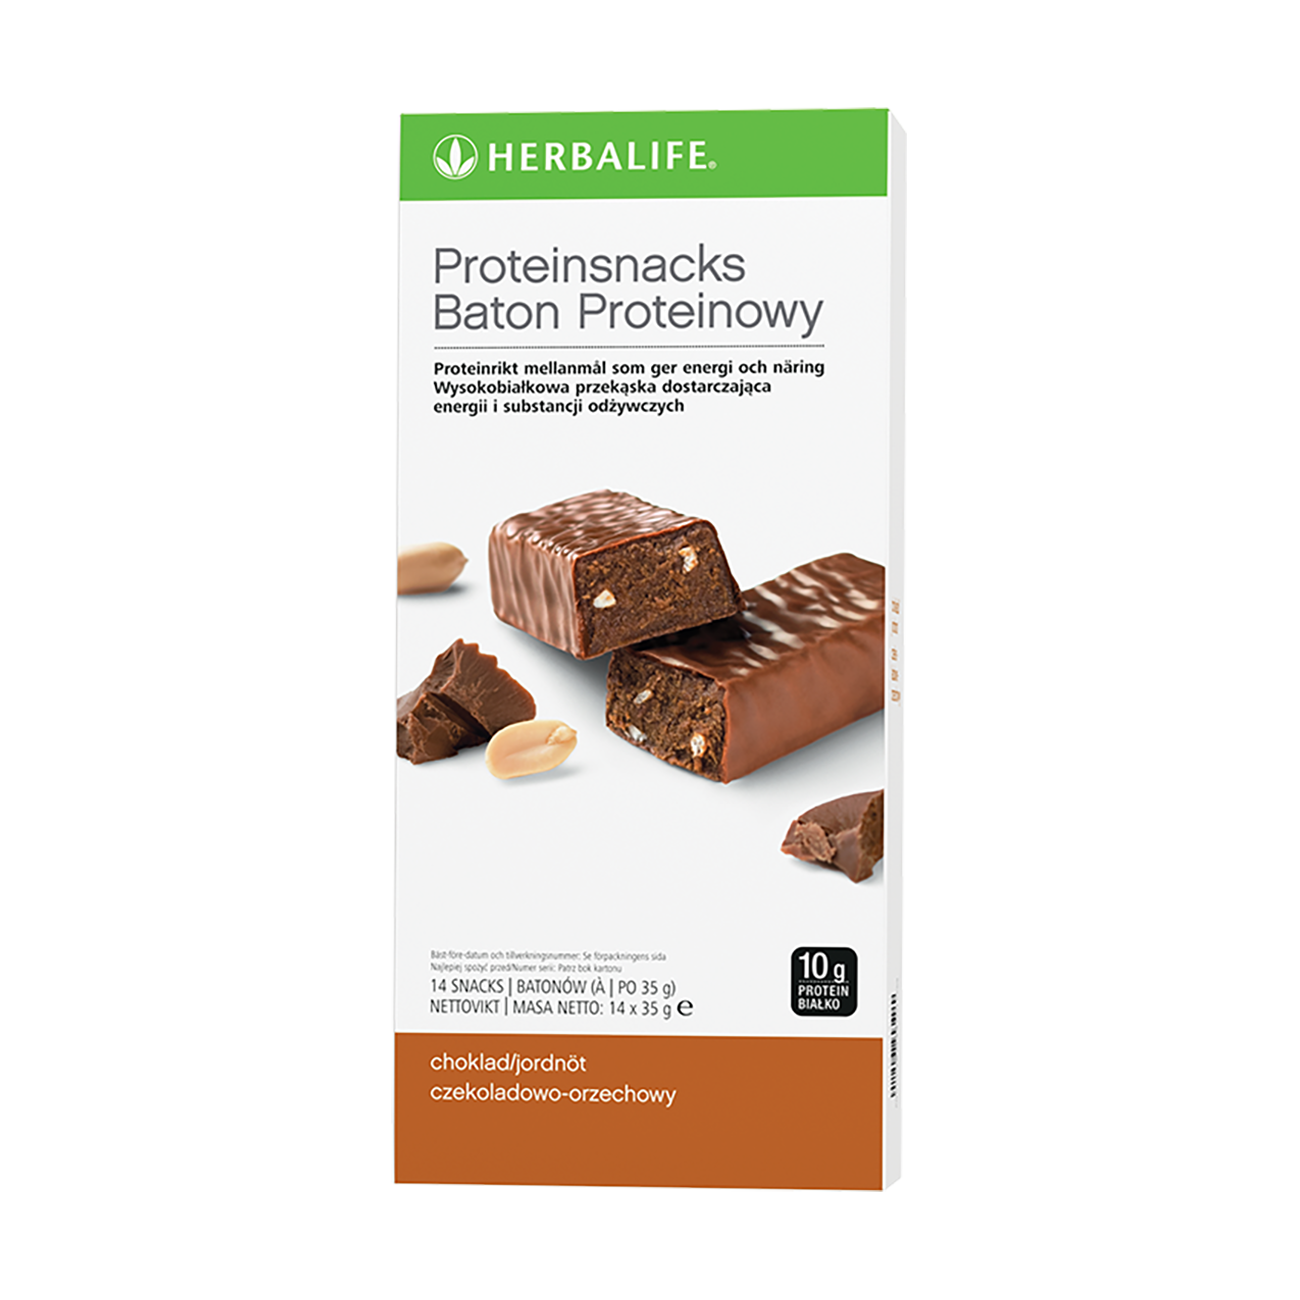 Baton proteinowy Produkt proteinowy o smaku czekoladowo-orzechowym product shot